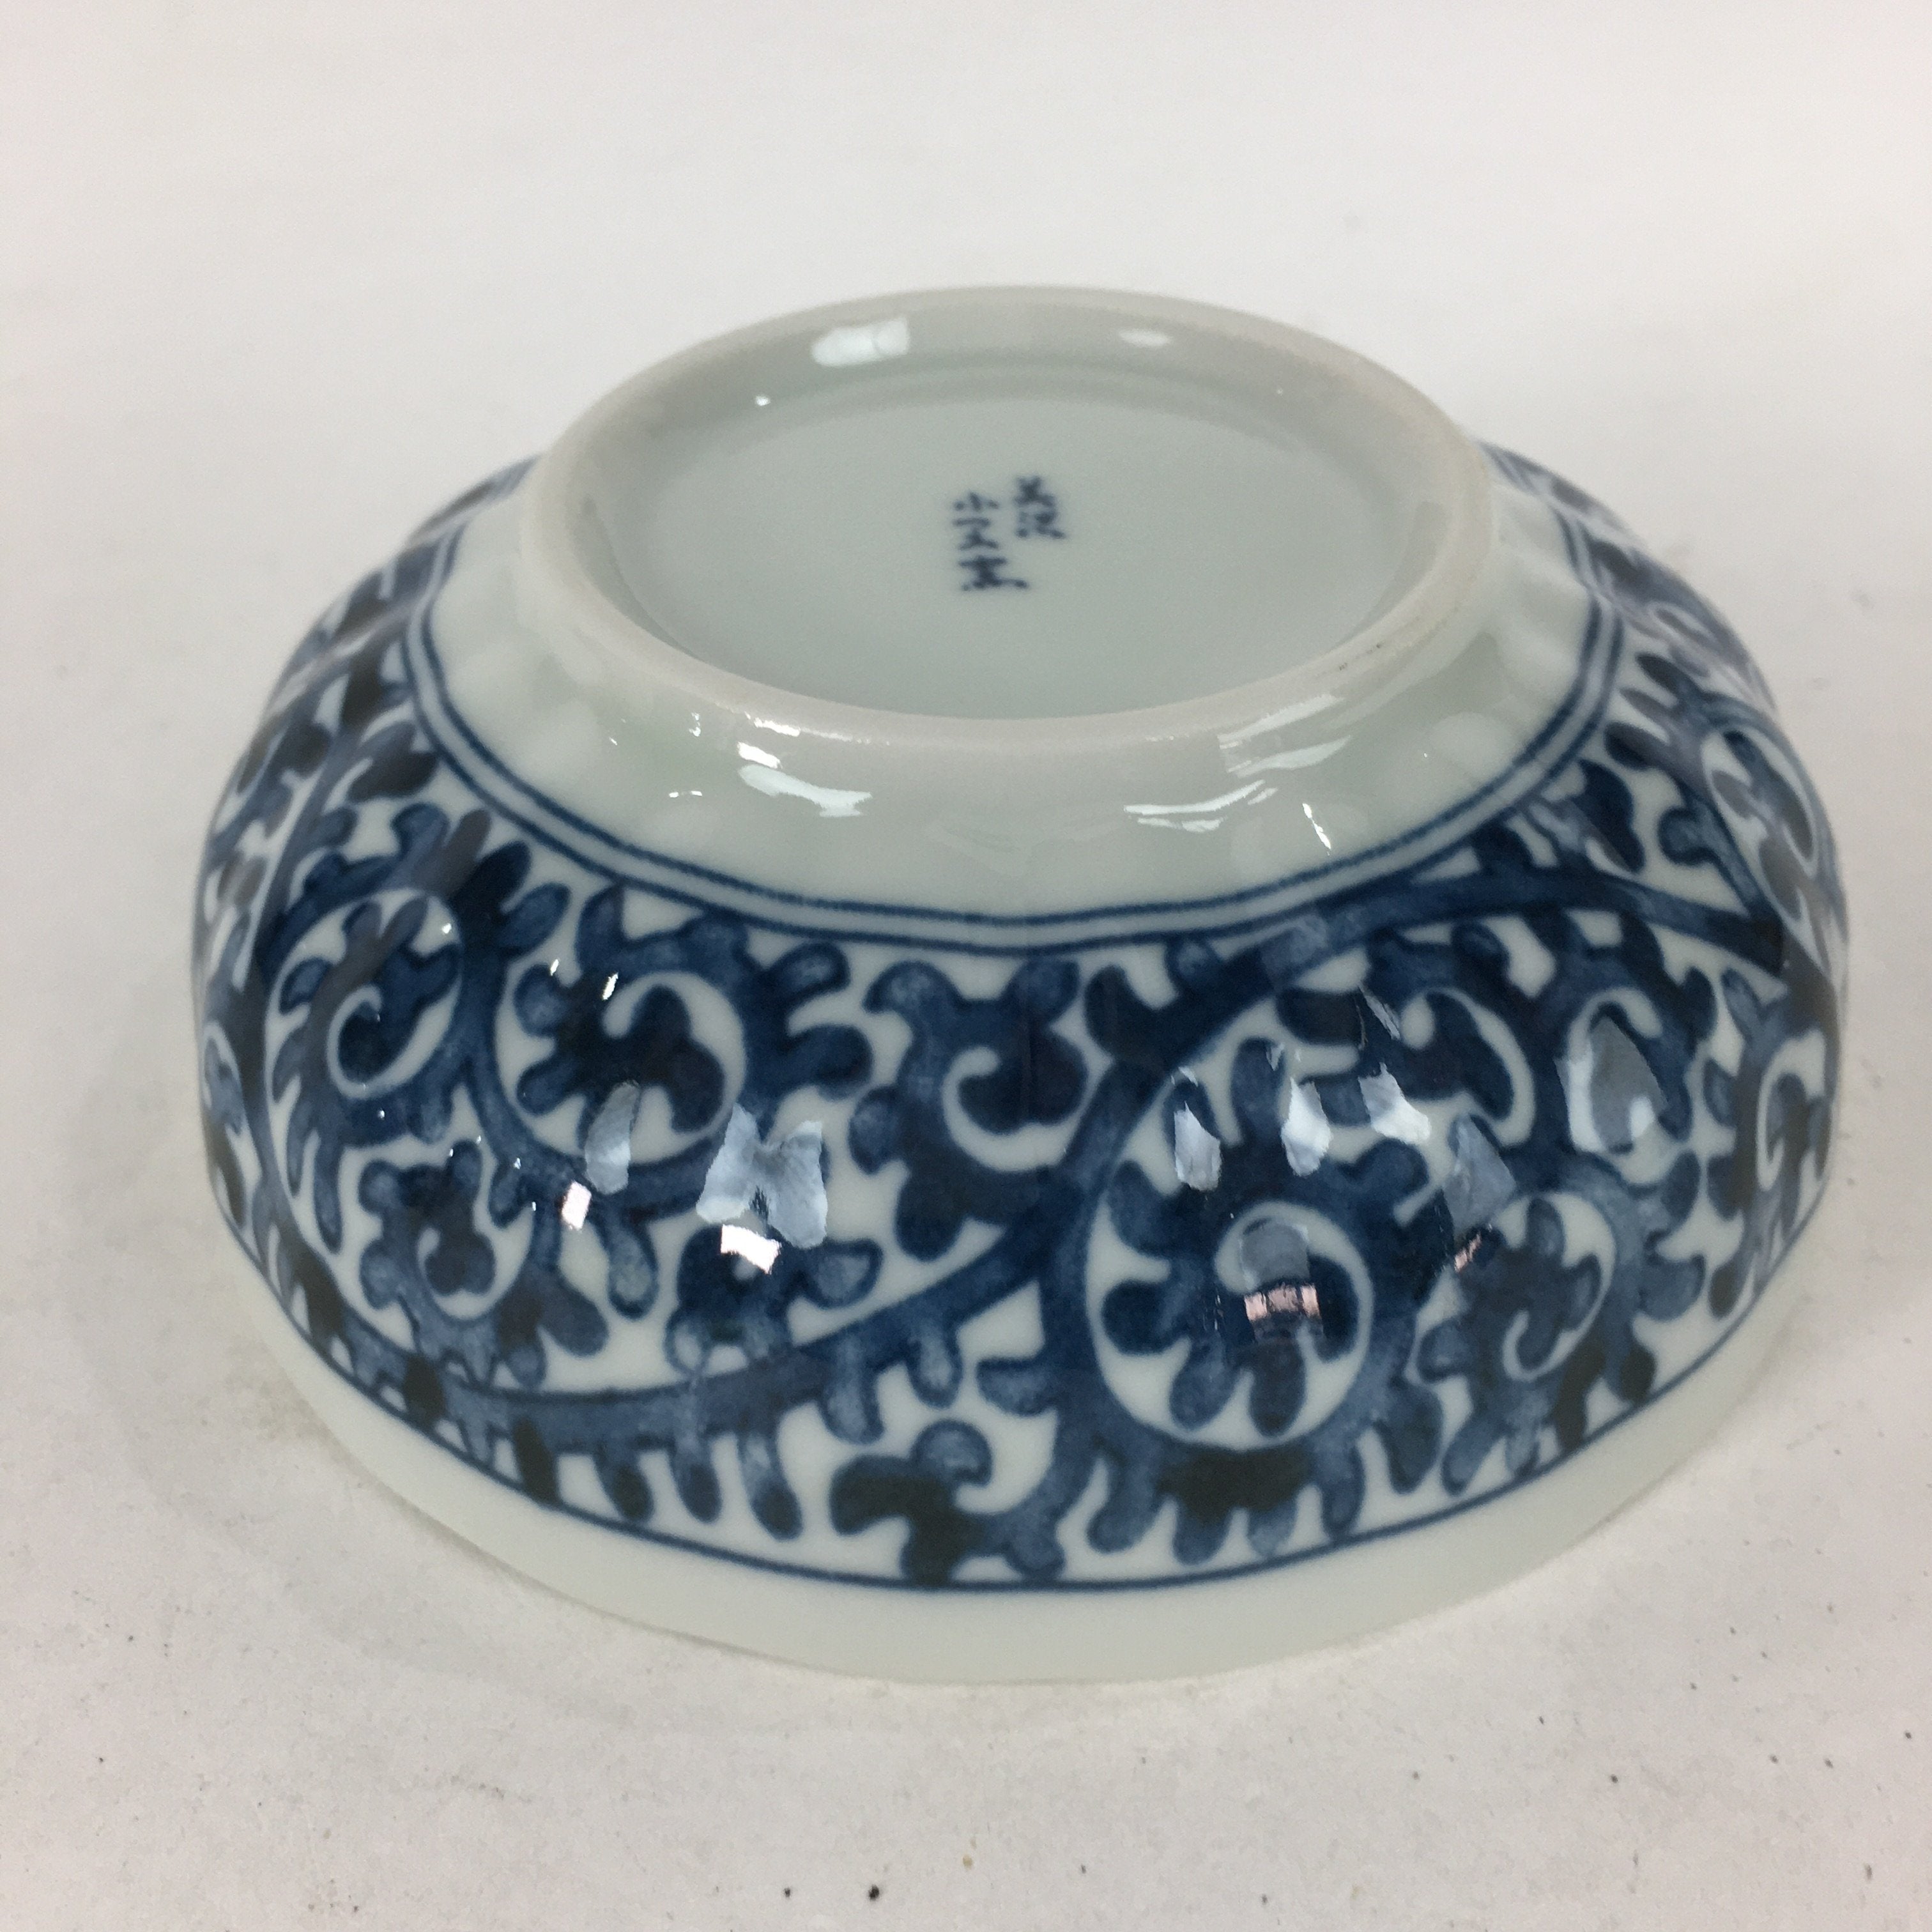 Japanese Ceramic Small Bowl Sometsuke Vtg Pottery Arabesque Design PP639